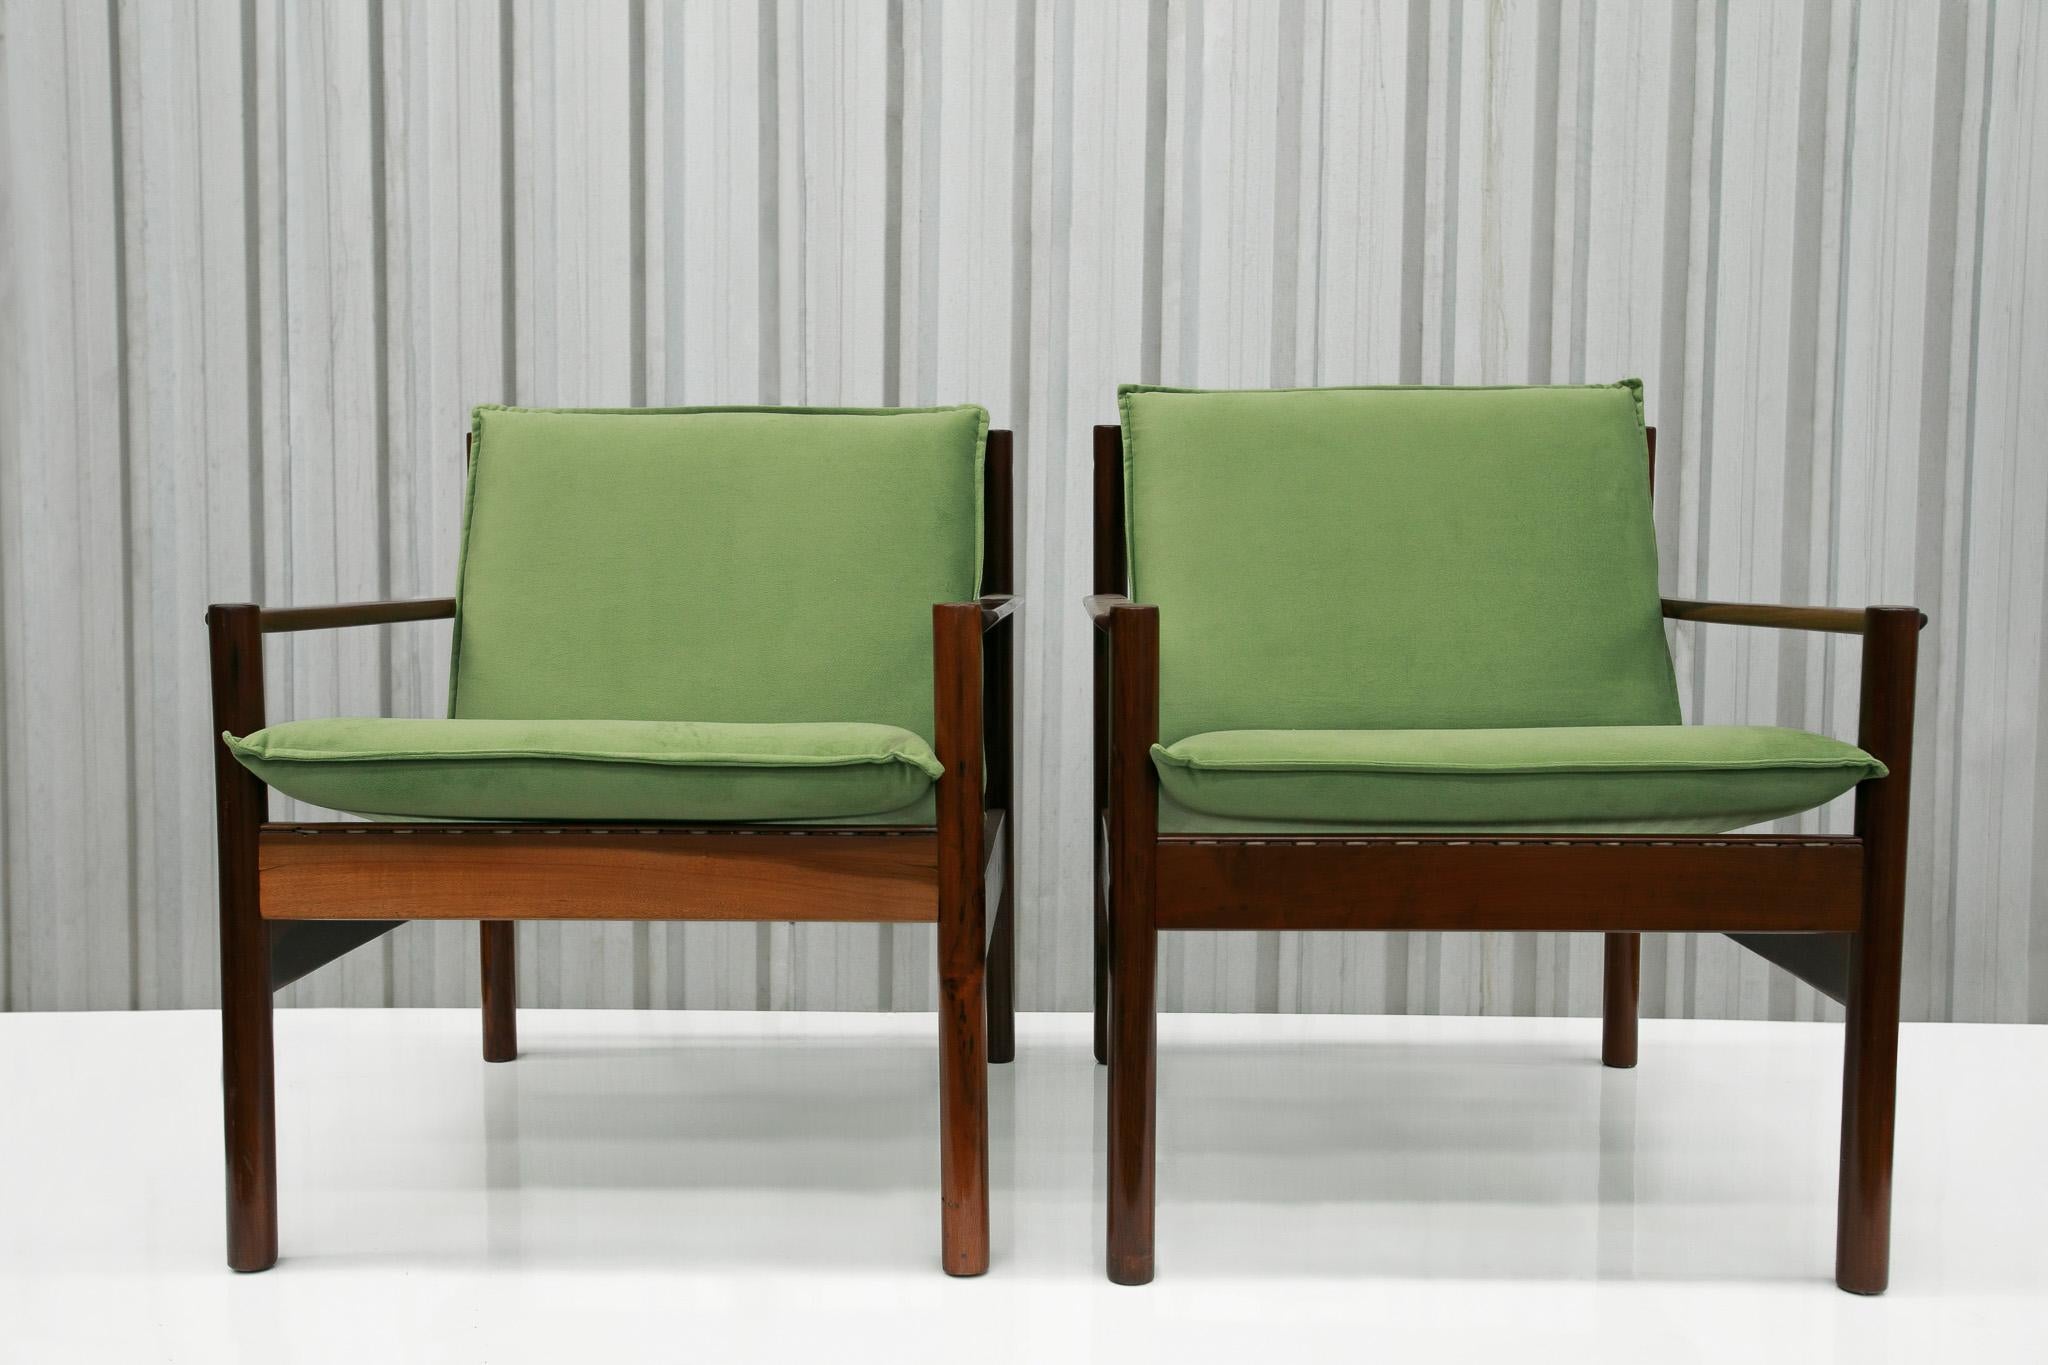 Diese modernen brasilianischen Sessel aus Hartholz und Stoff, entworfen von Michel Arnoult in den 1960er Jahren, sind nichts weniger als spektakulär!

Sie wurden in den 1960er Jahren entworfen und tragen den Namen 